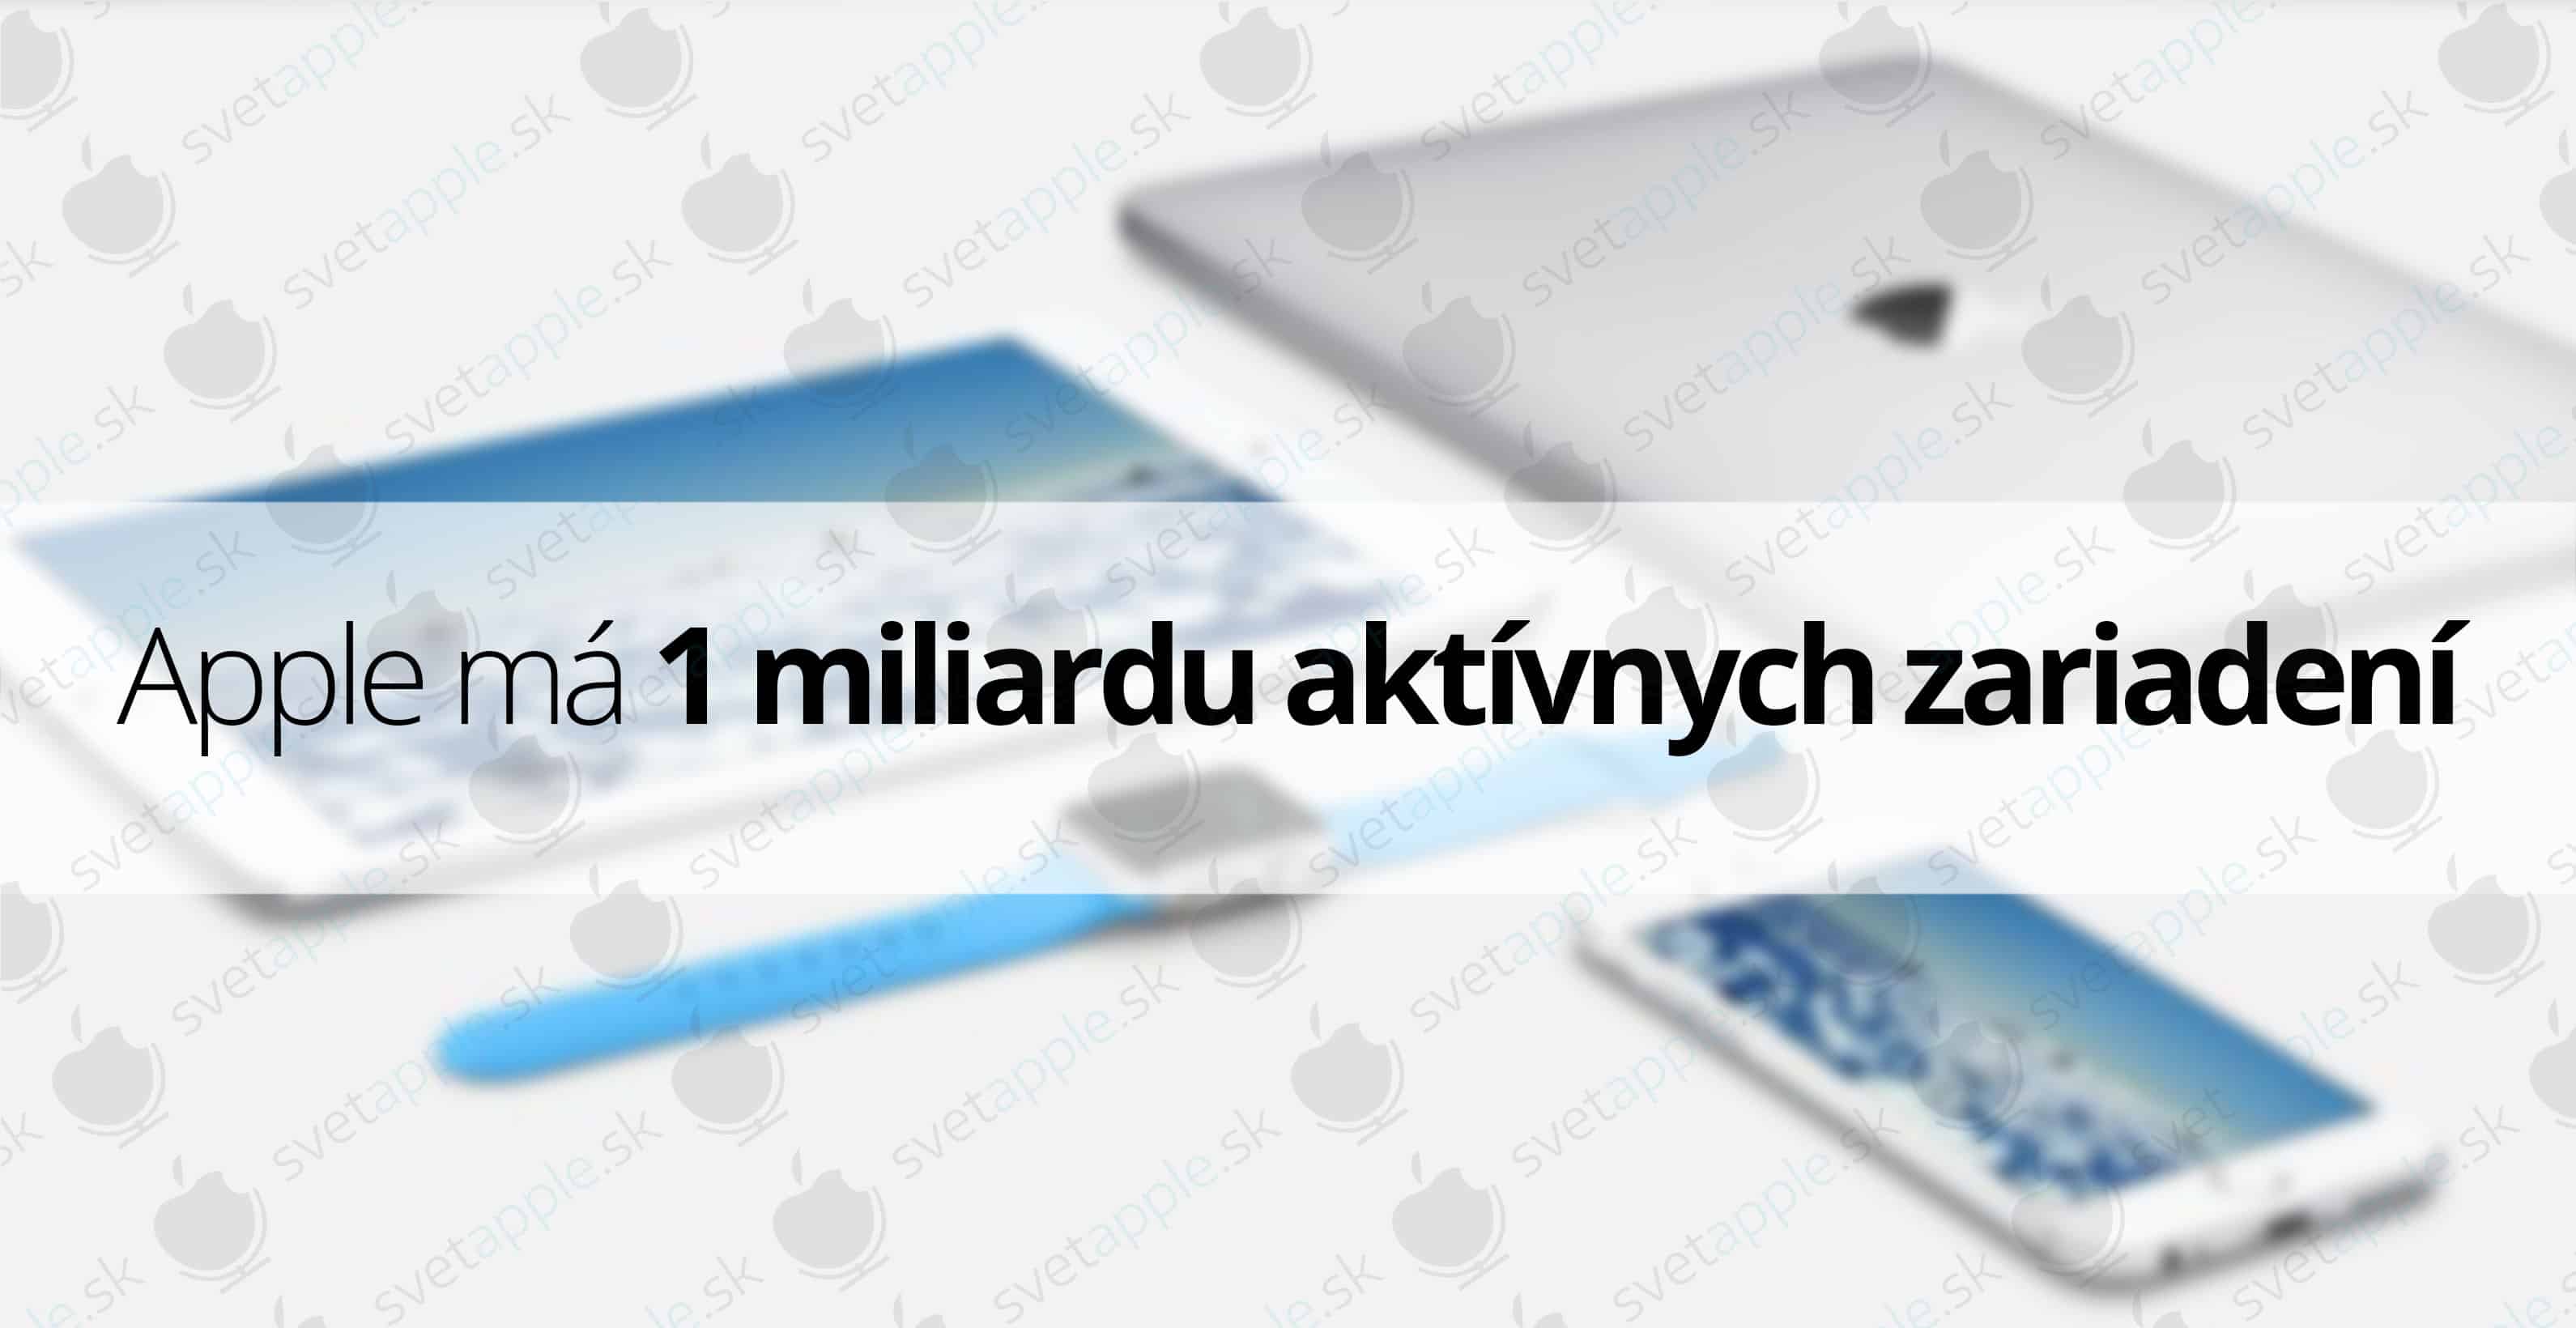 apple-1-miliarda---titulná-fotografia---SvetApple